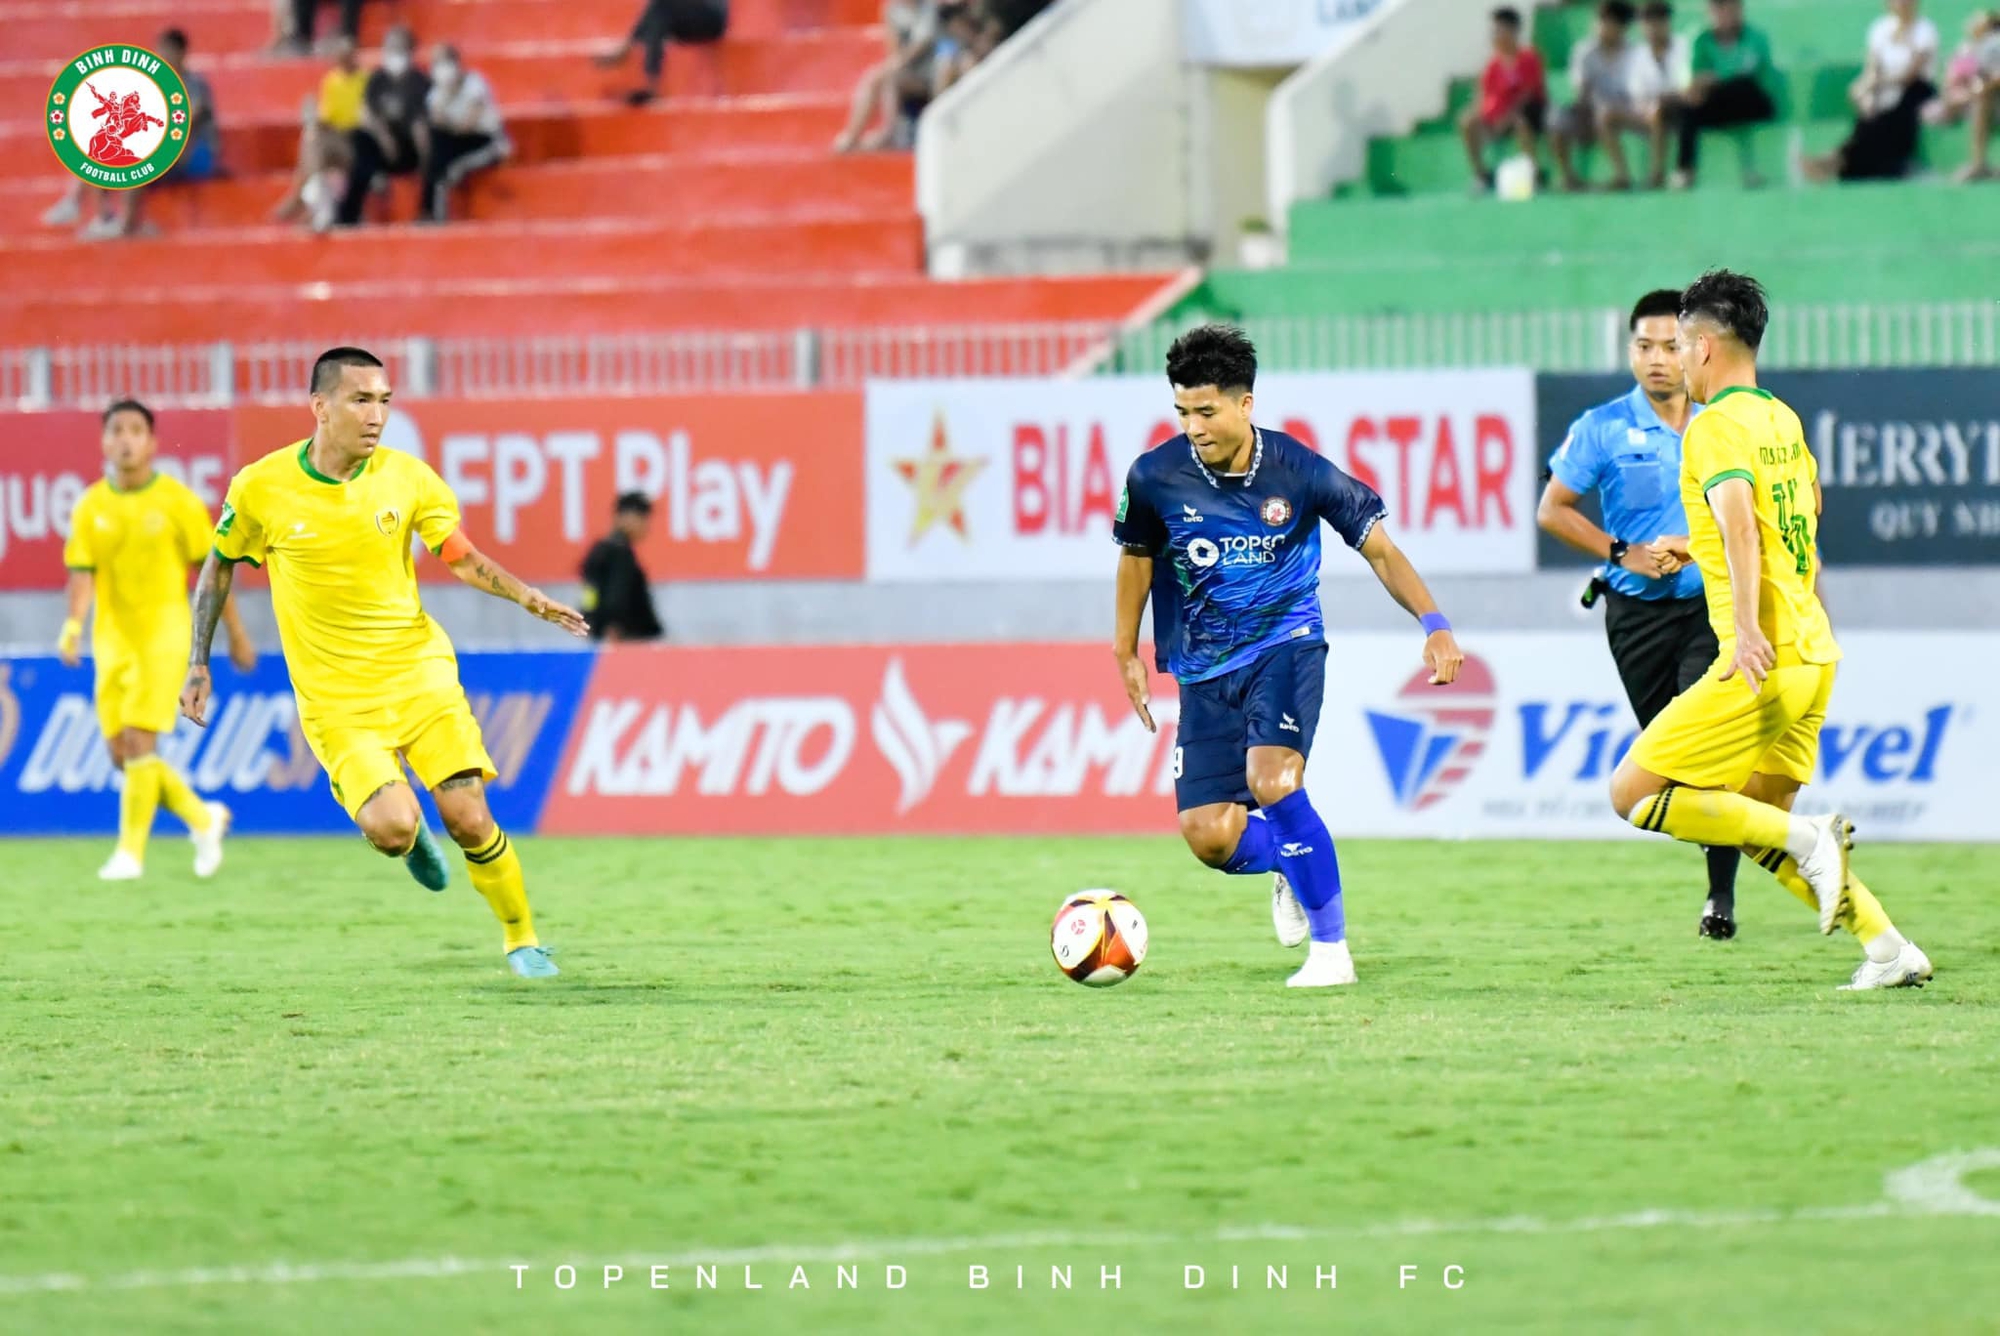 Kết quả vòng 1/8 Cúp Quốc gia 2023: Topenland Bình Định thắng “đấu súng” trước Quảng Nam - Ảnh 3.